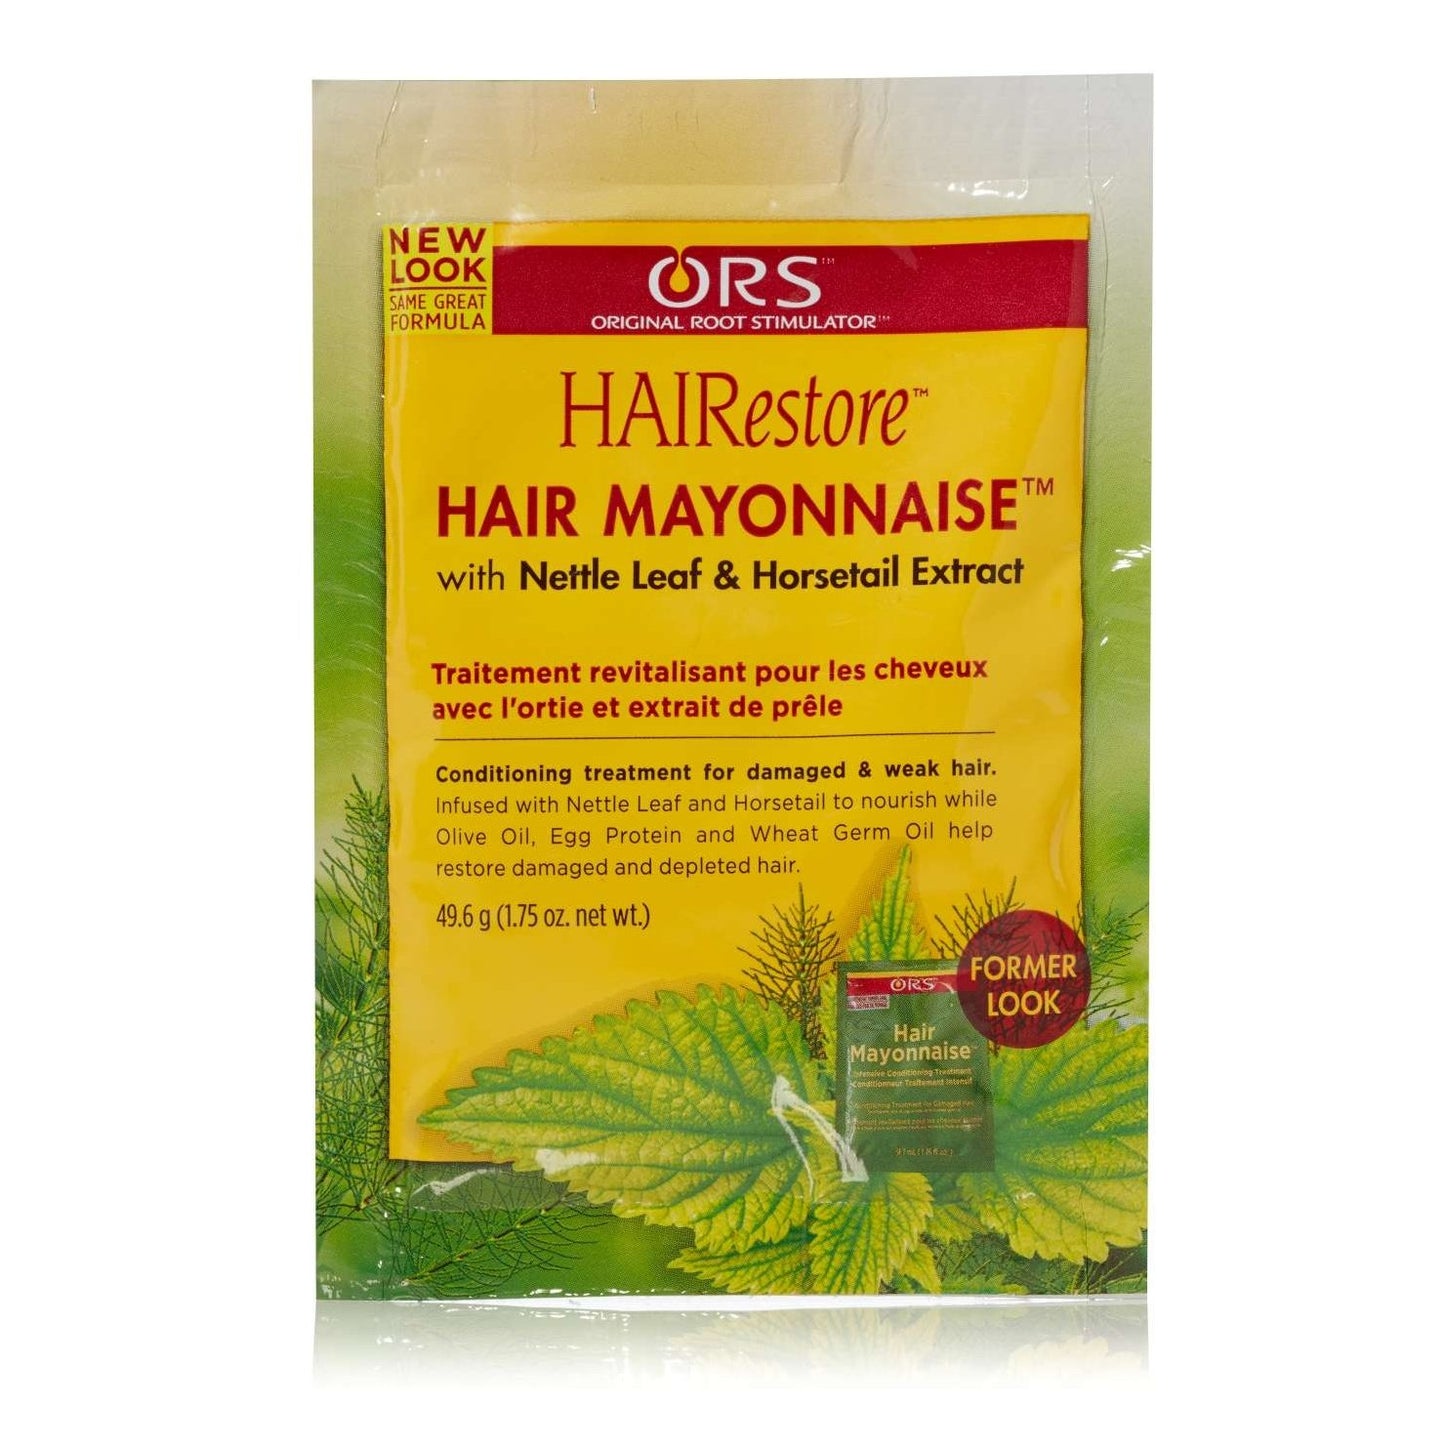 Ors Hair Mayonnaise